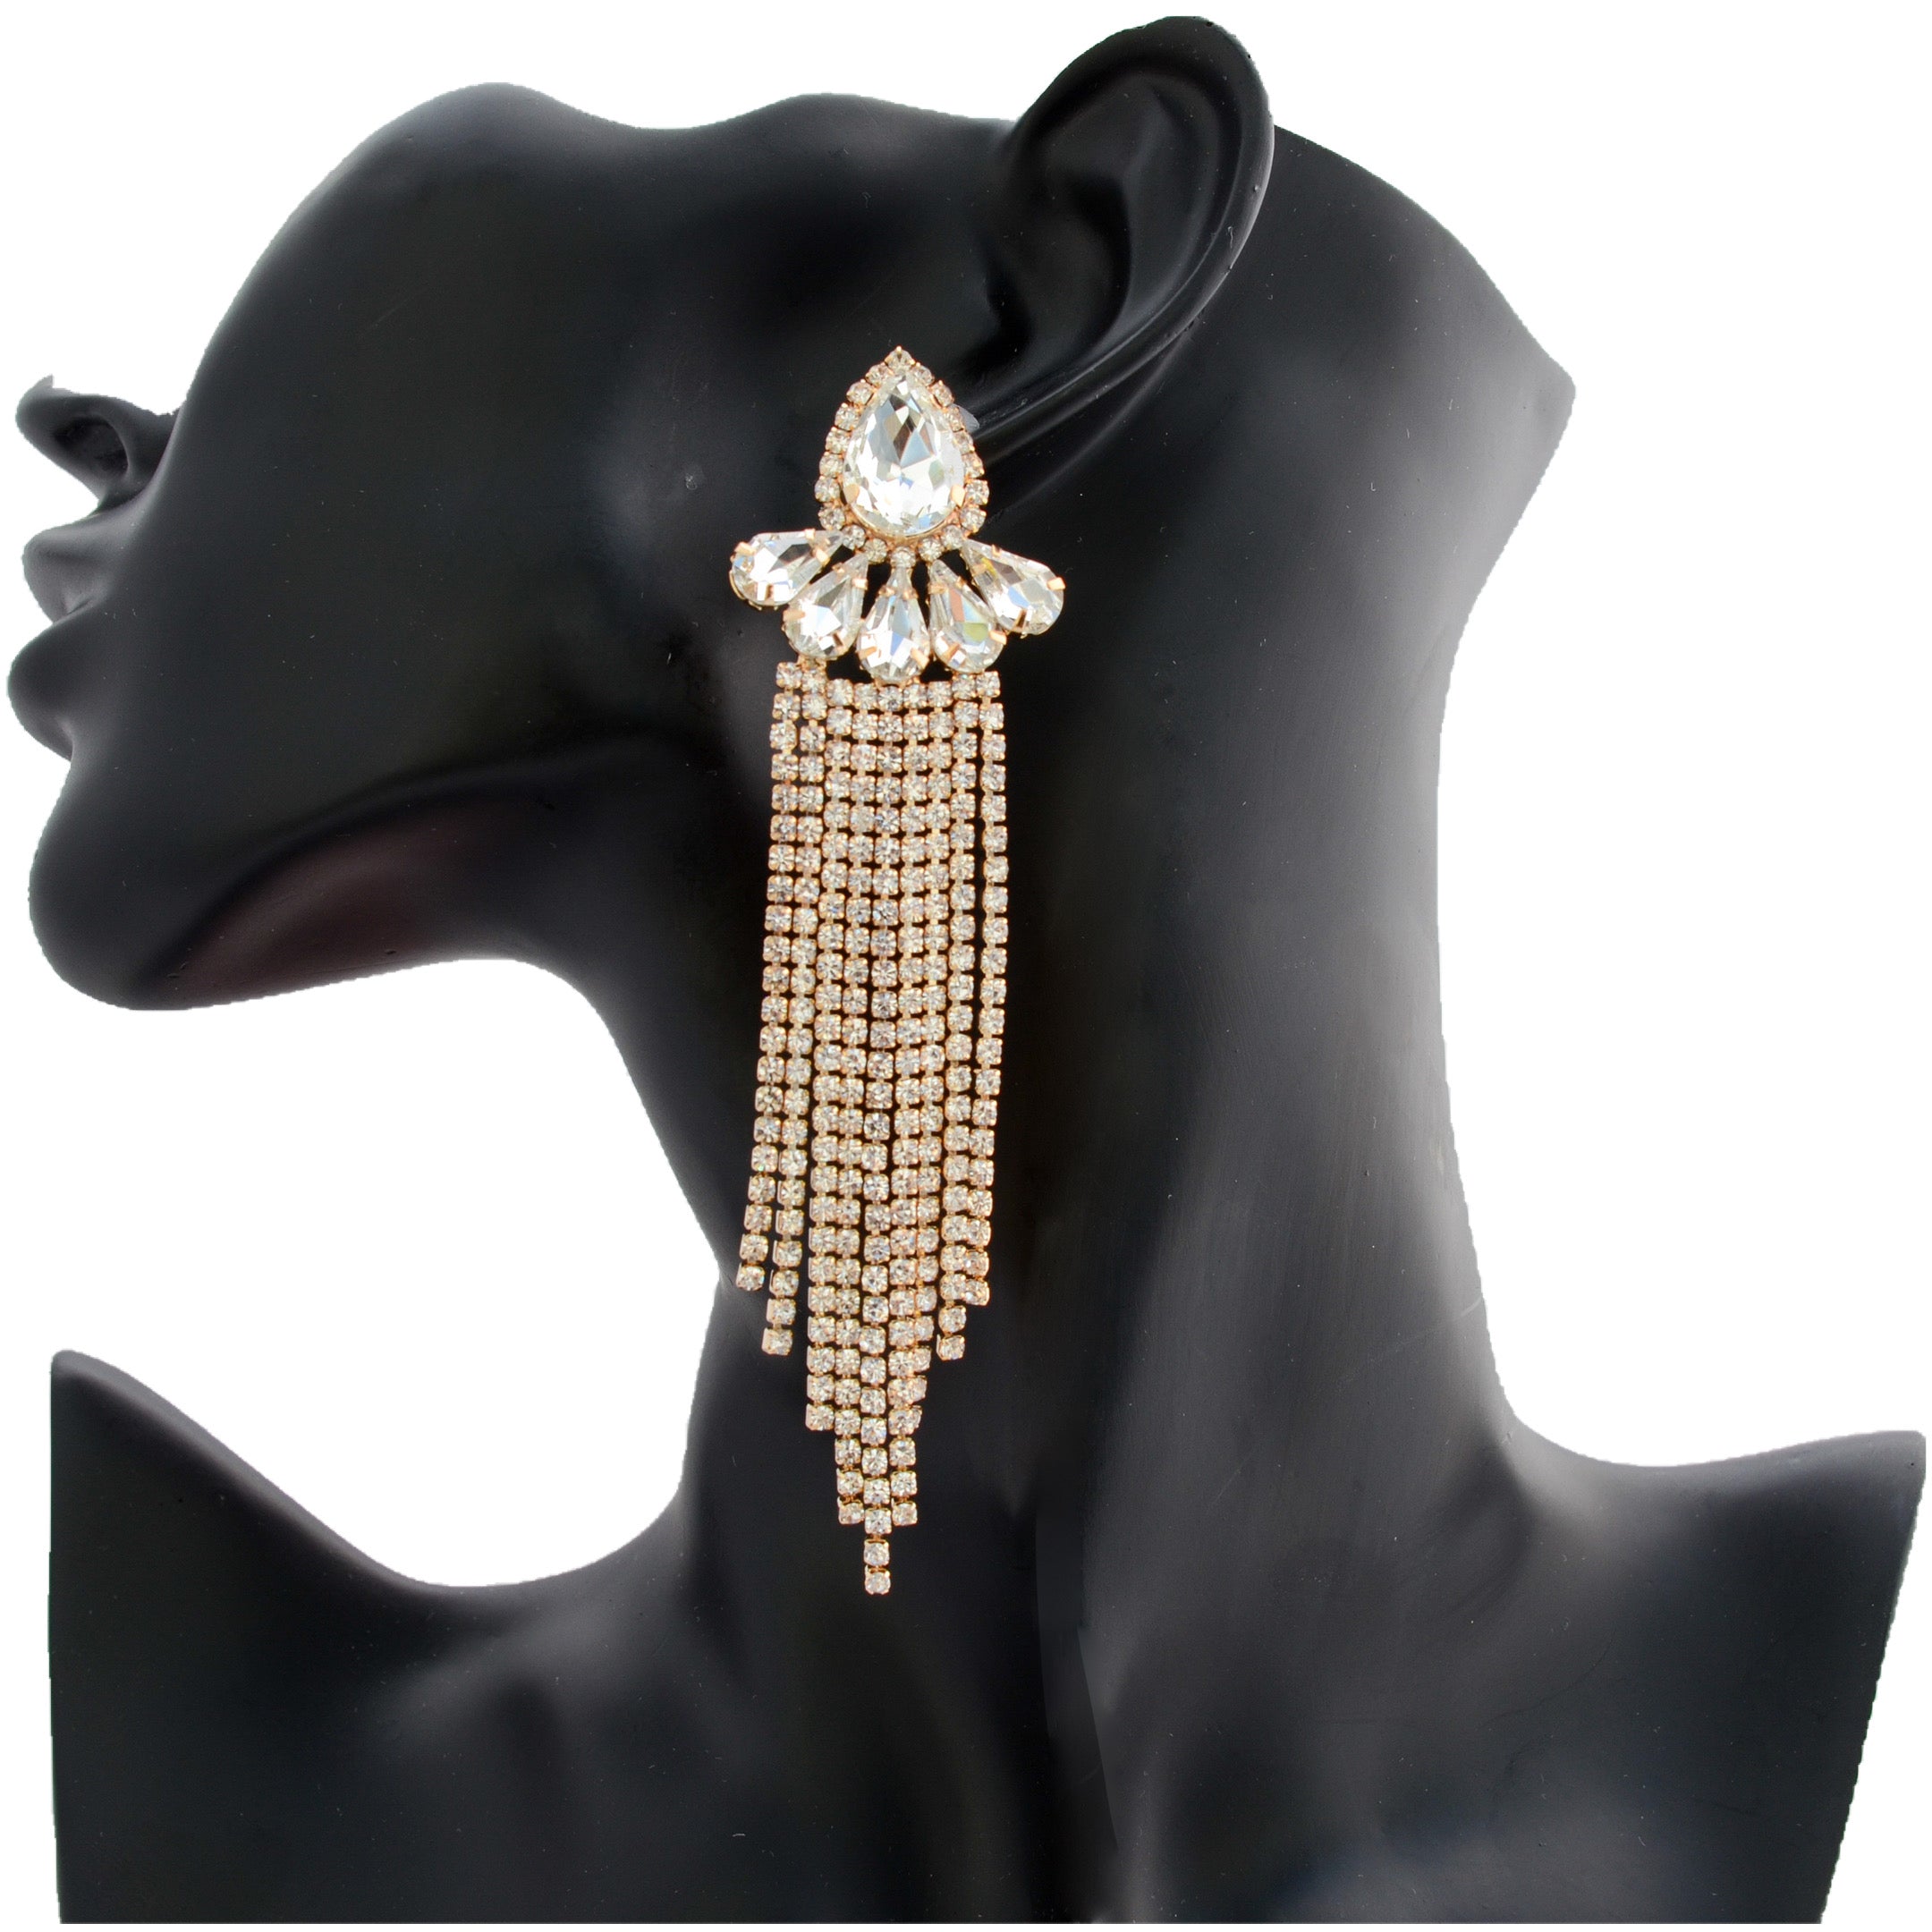 J'adore - clear gold cluster dangle rhinestone earrings